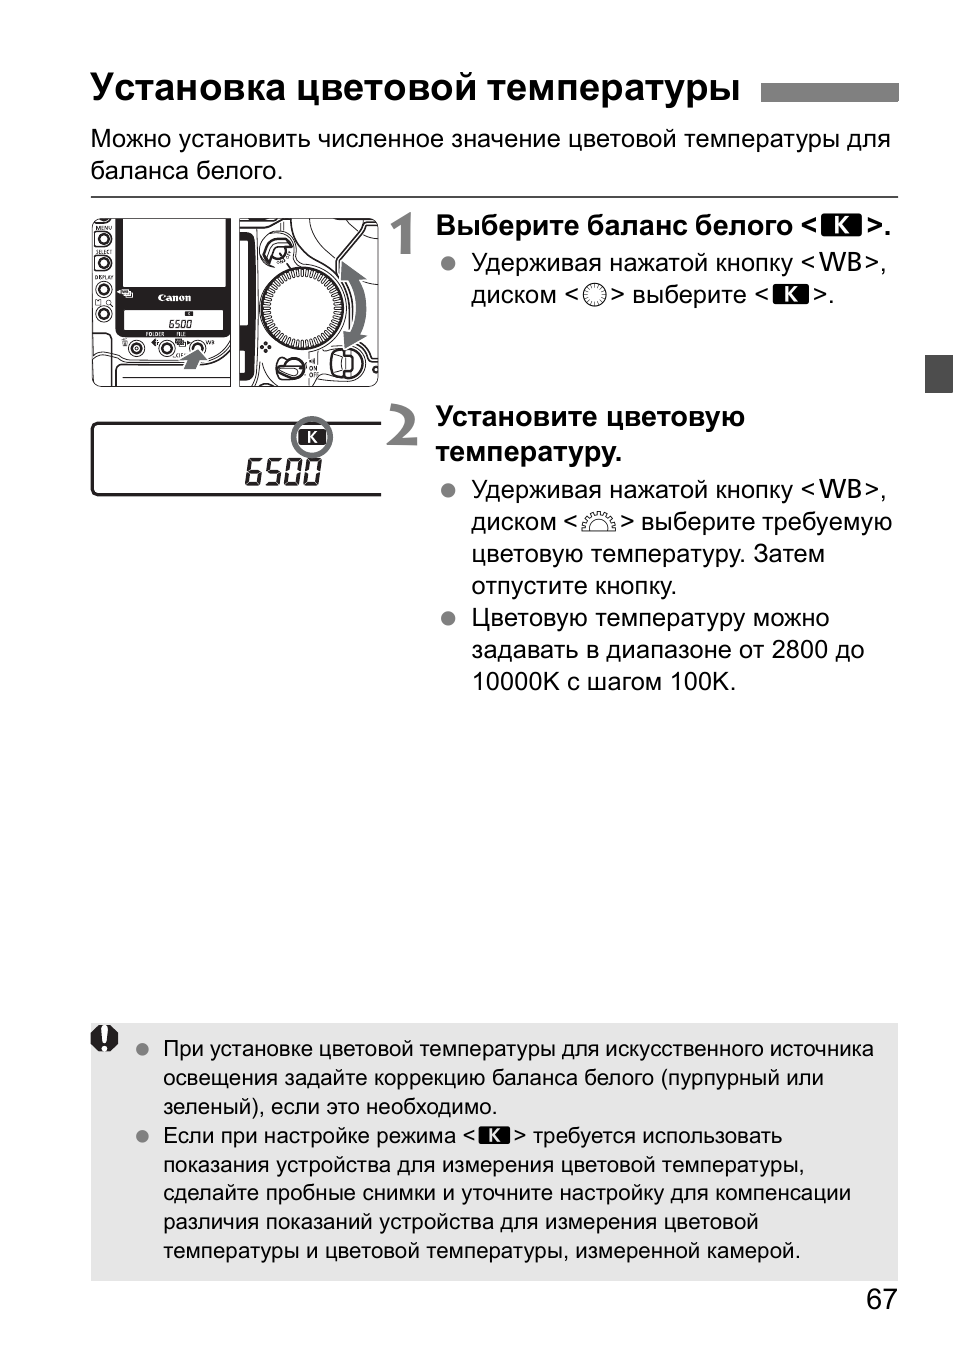 Установка цветовой температуры | Инструкция по эксплуатации Canon EOS 1D Mark II N | Страница 67 / 196